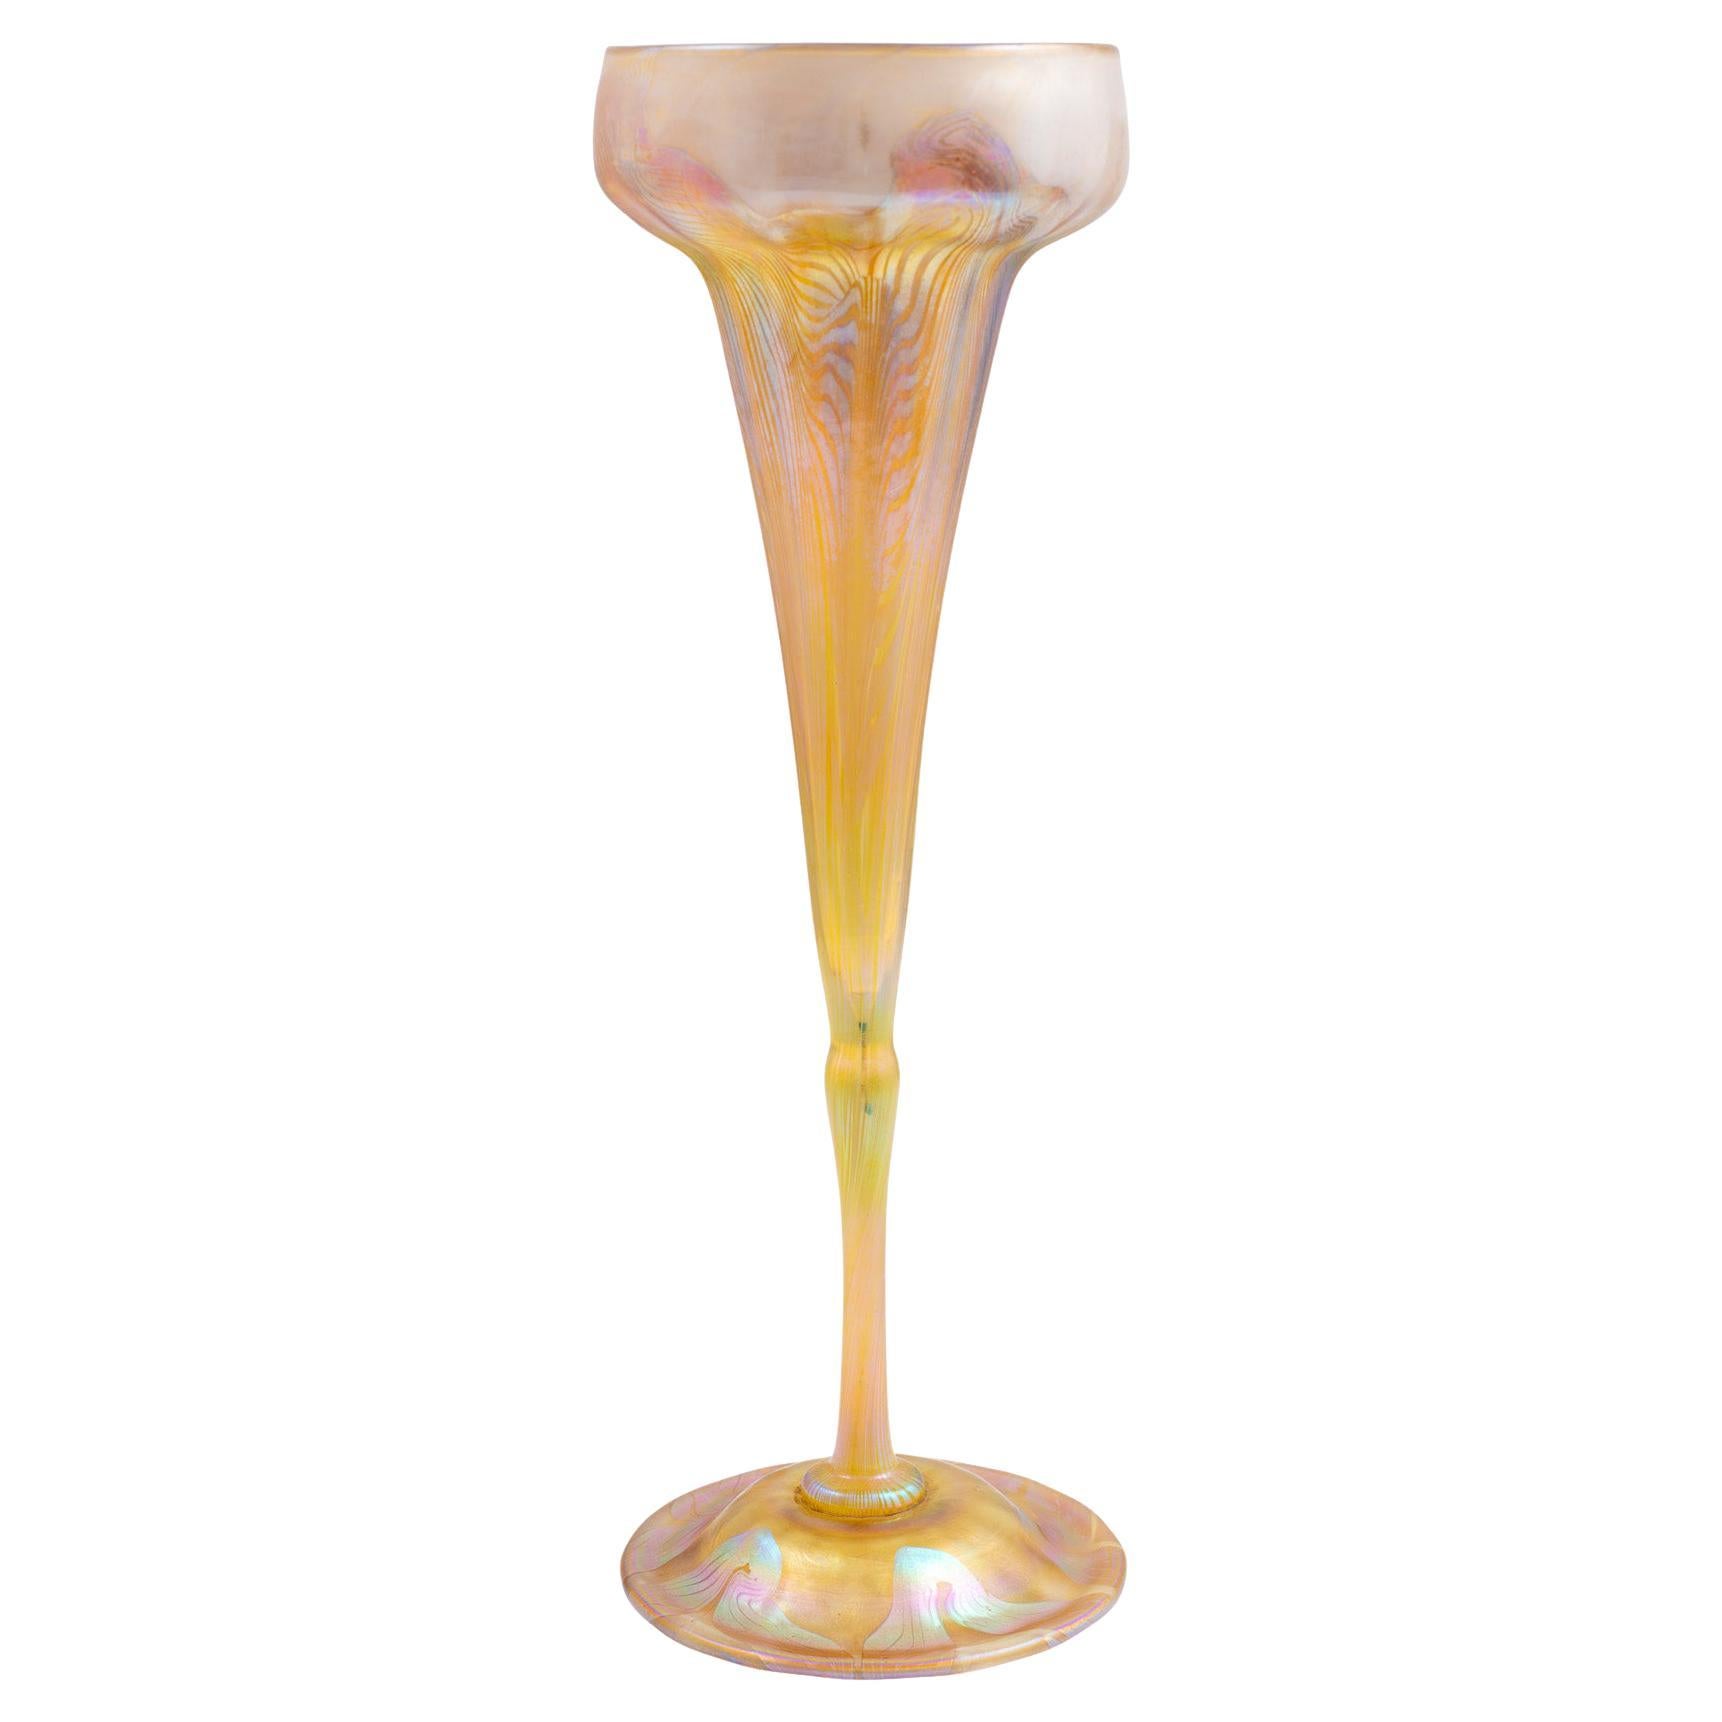 Vase Louis Comfort Tiffany Iridescent Favrile Glass 1896 Orange Art Nouveau